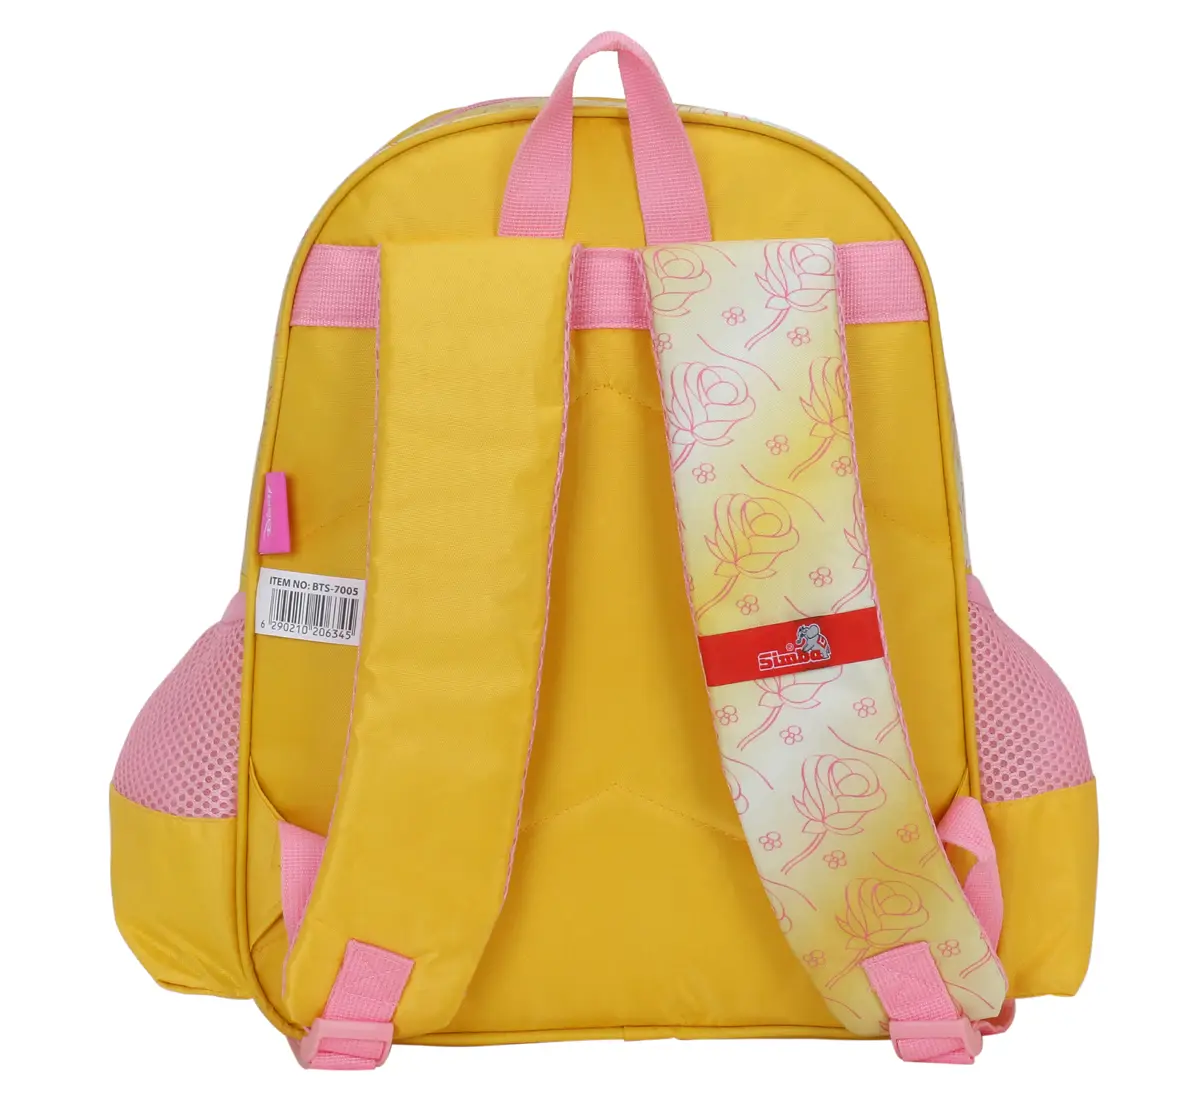 Simba Princess Big Dreams 14 Backpack Multicolor 3Y+